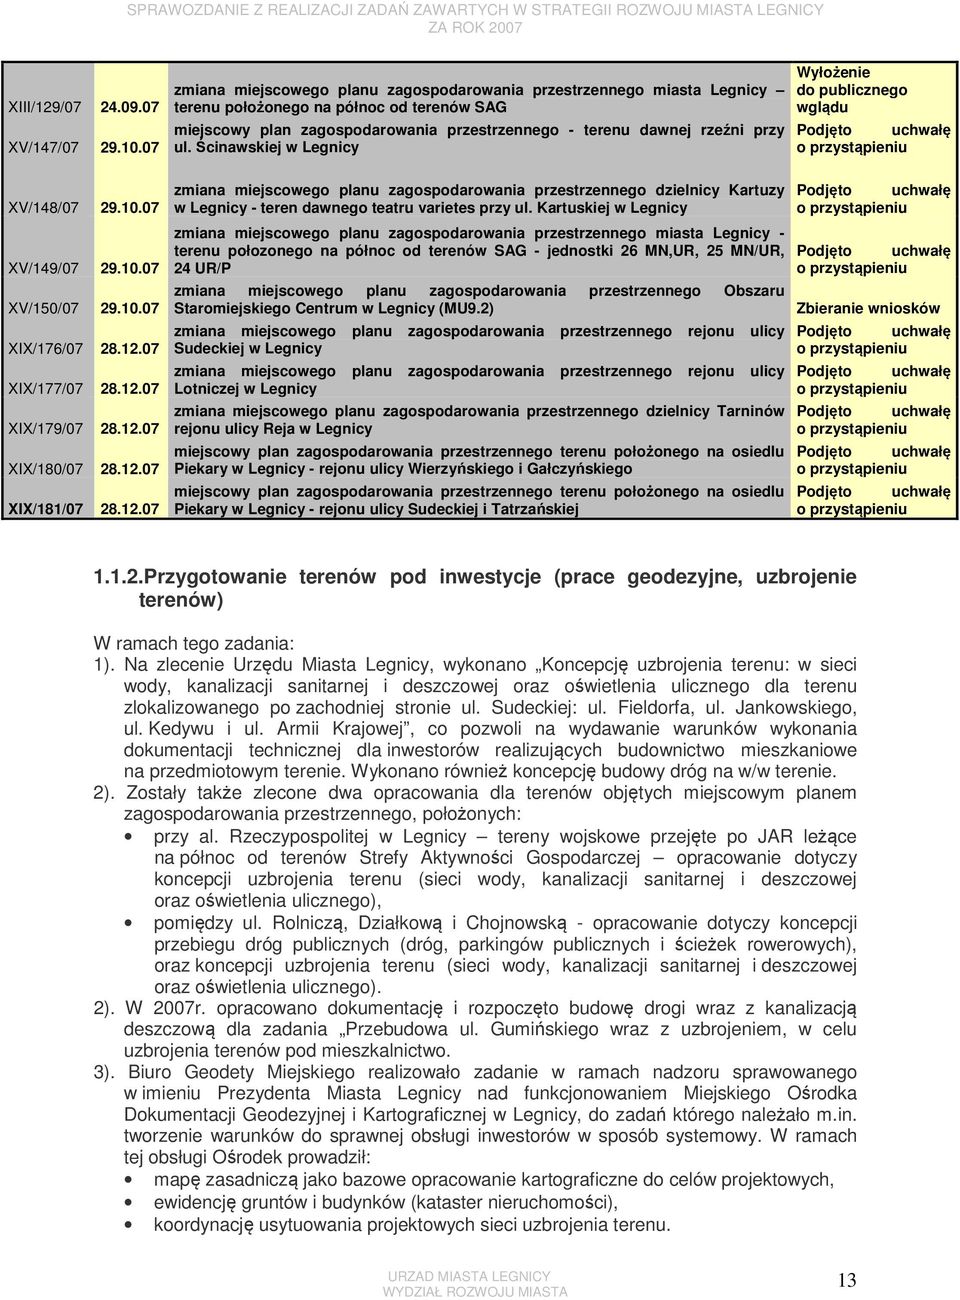 12.07 XIX/181/07 28.12.07 zmiana miejscowego planu przestrzennego dzielnicy Kartuzy w Legnicy - teren dawnego teatru varietes przy ul.